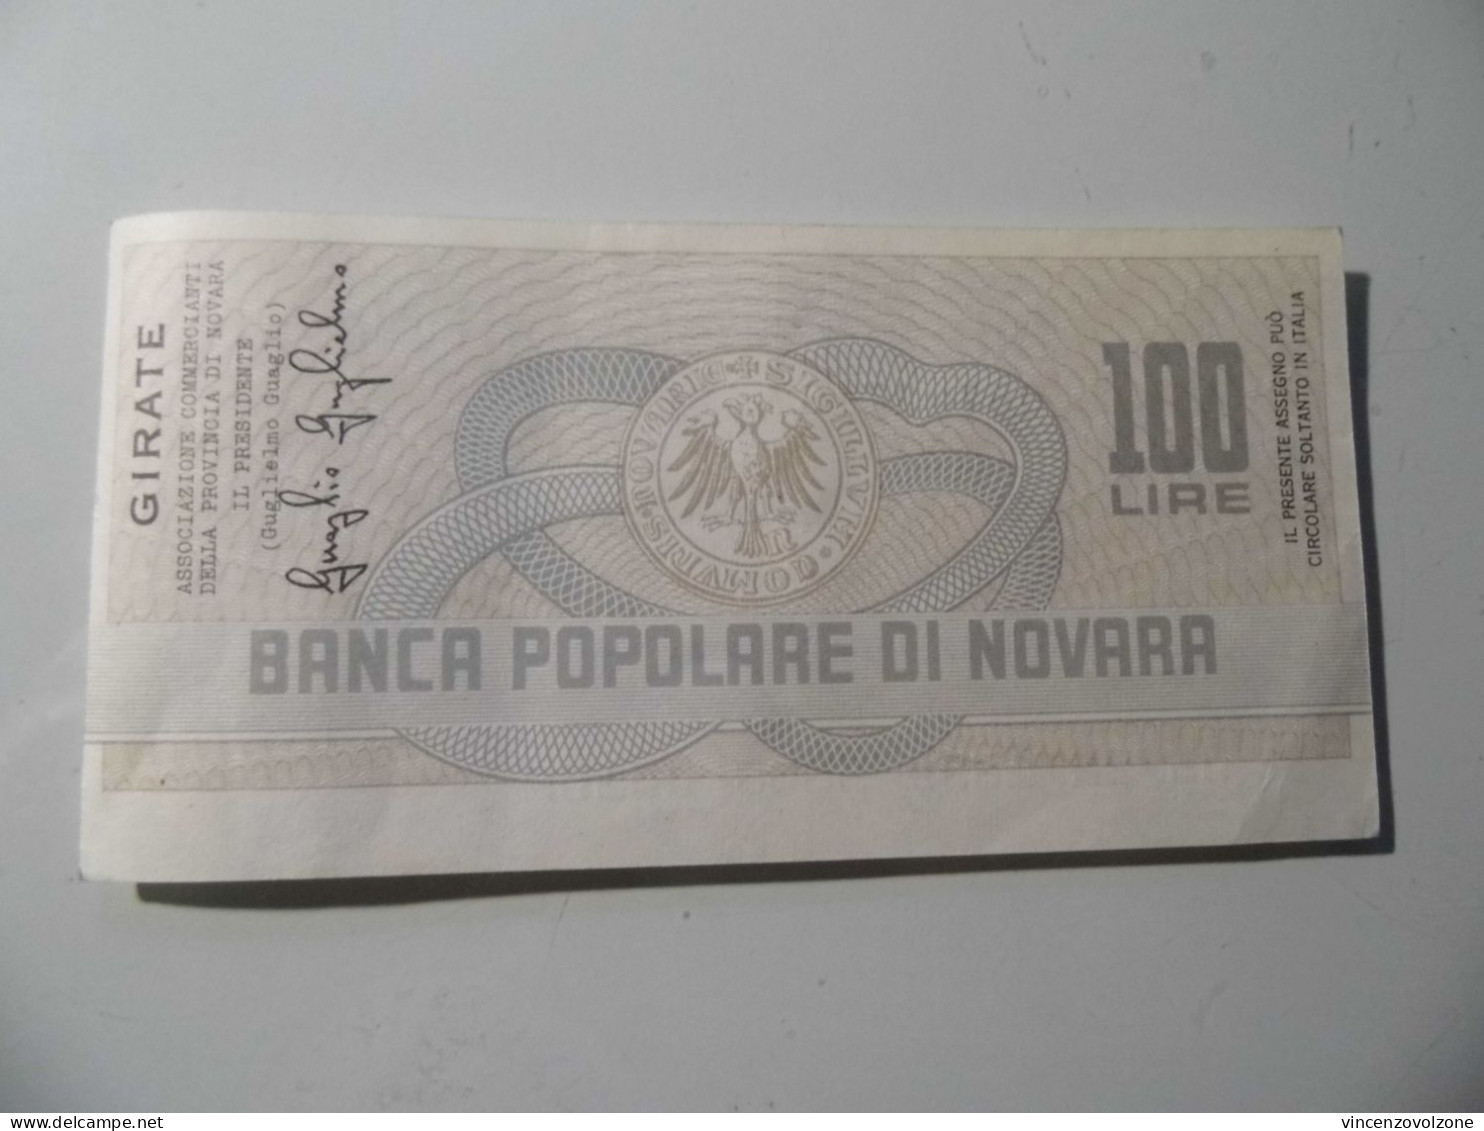 Miniassegno "BANCA POPOLARE DI NOVARA LIT. 100" - [10] Cheques En Mini-cheques